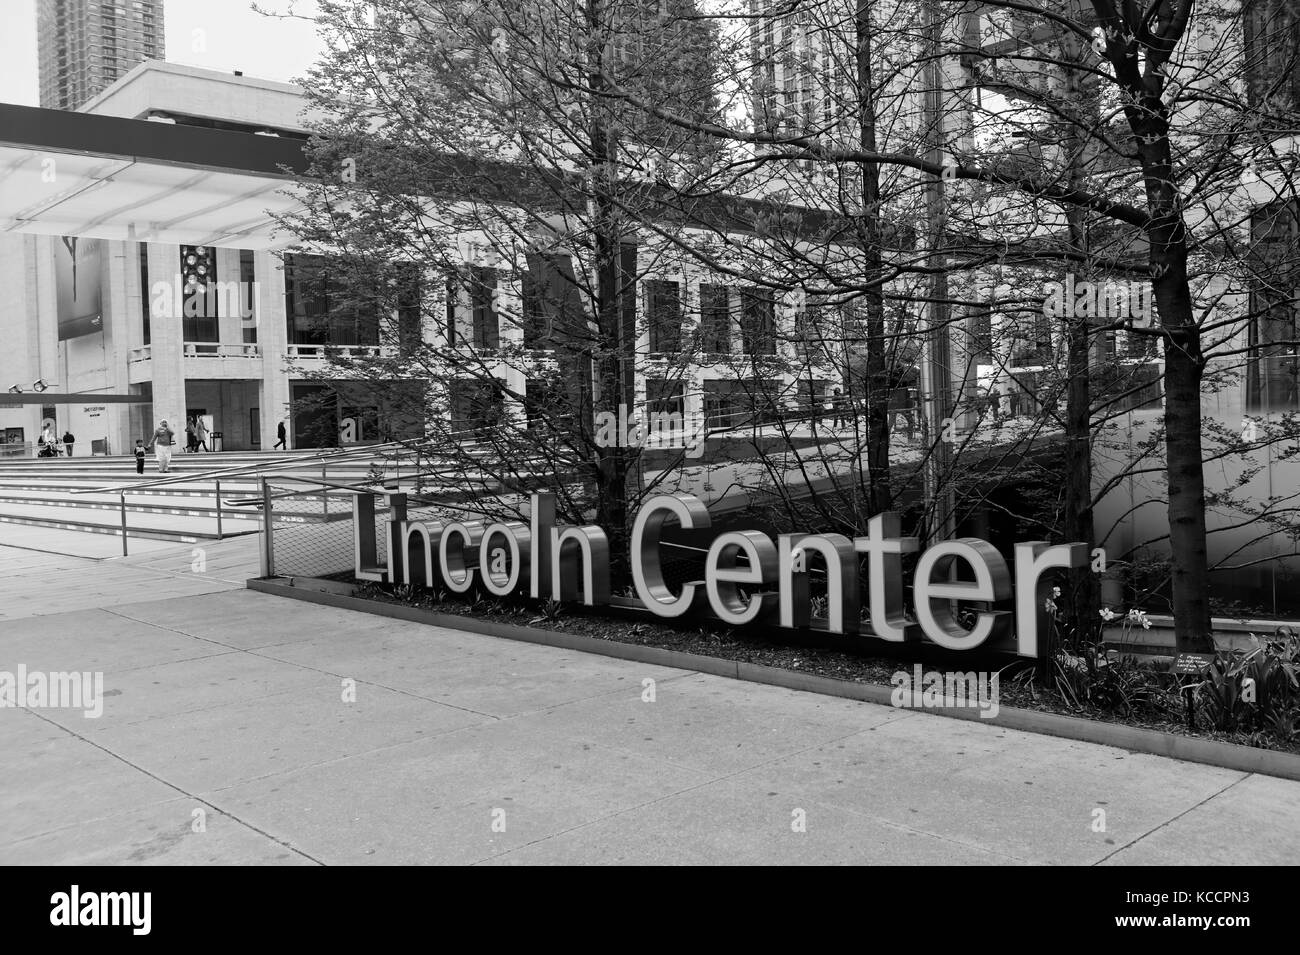 Eingang und melden Sie am Lincoln Center für Darstellende Künste in Manhattan, New York City. Stockfoto